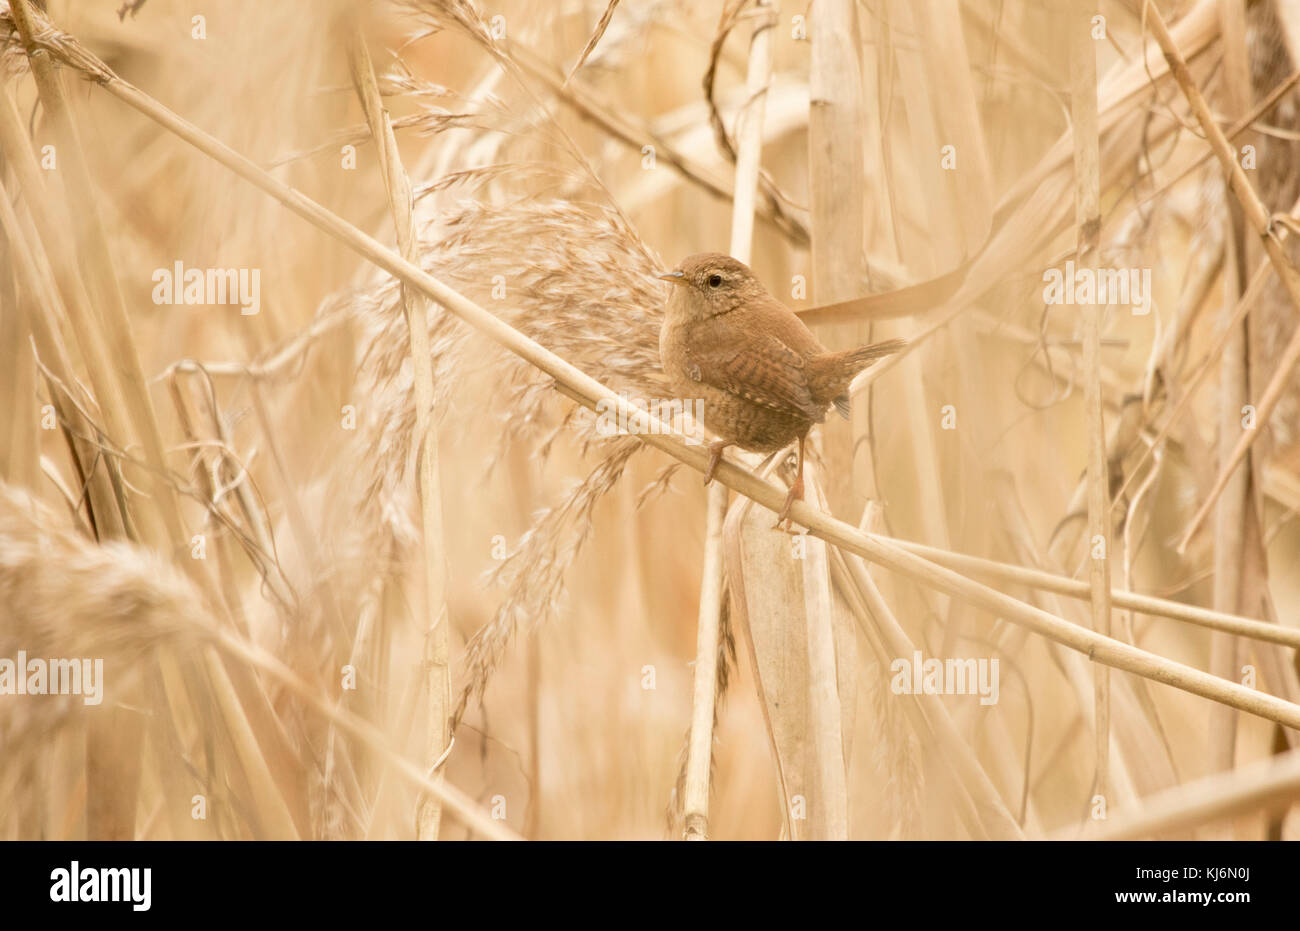 Wren in the Golden reeds Stock Photo